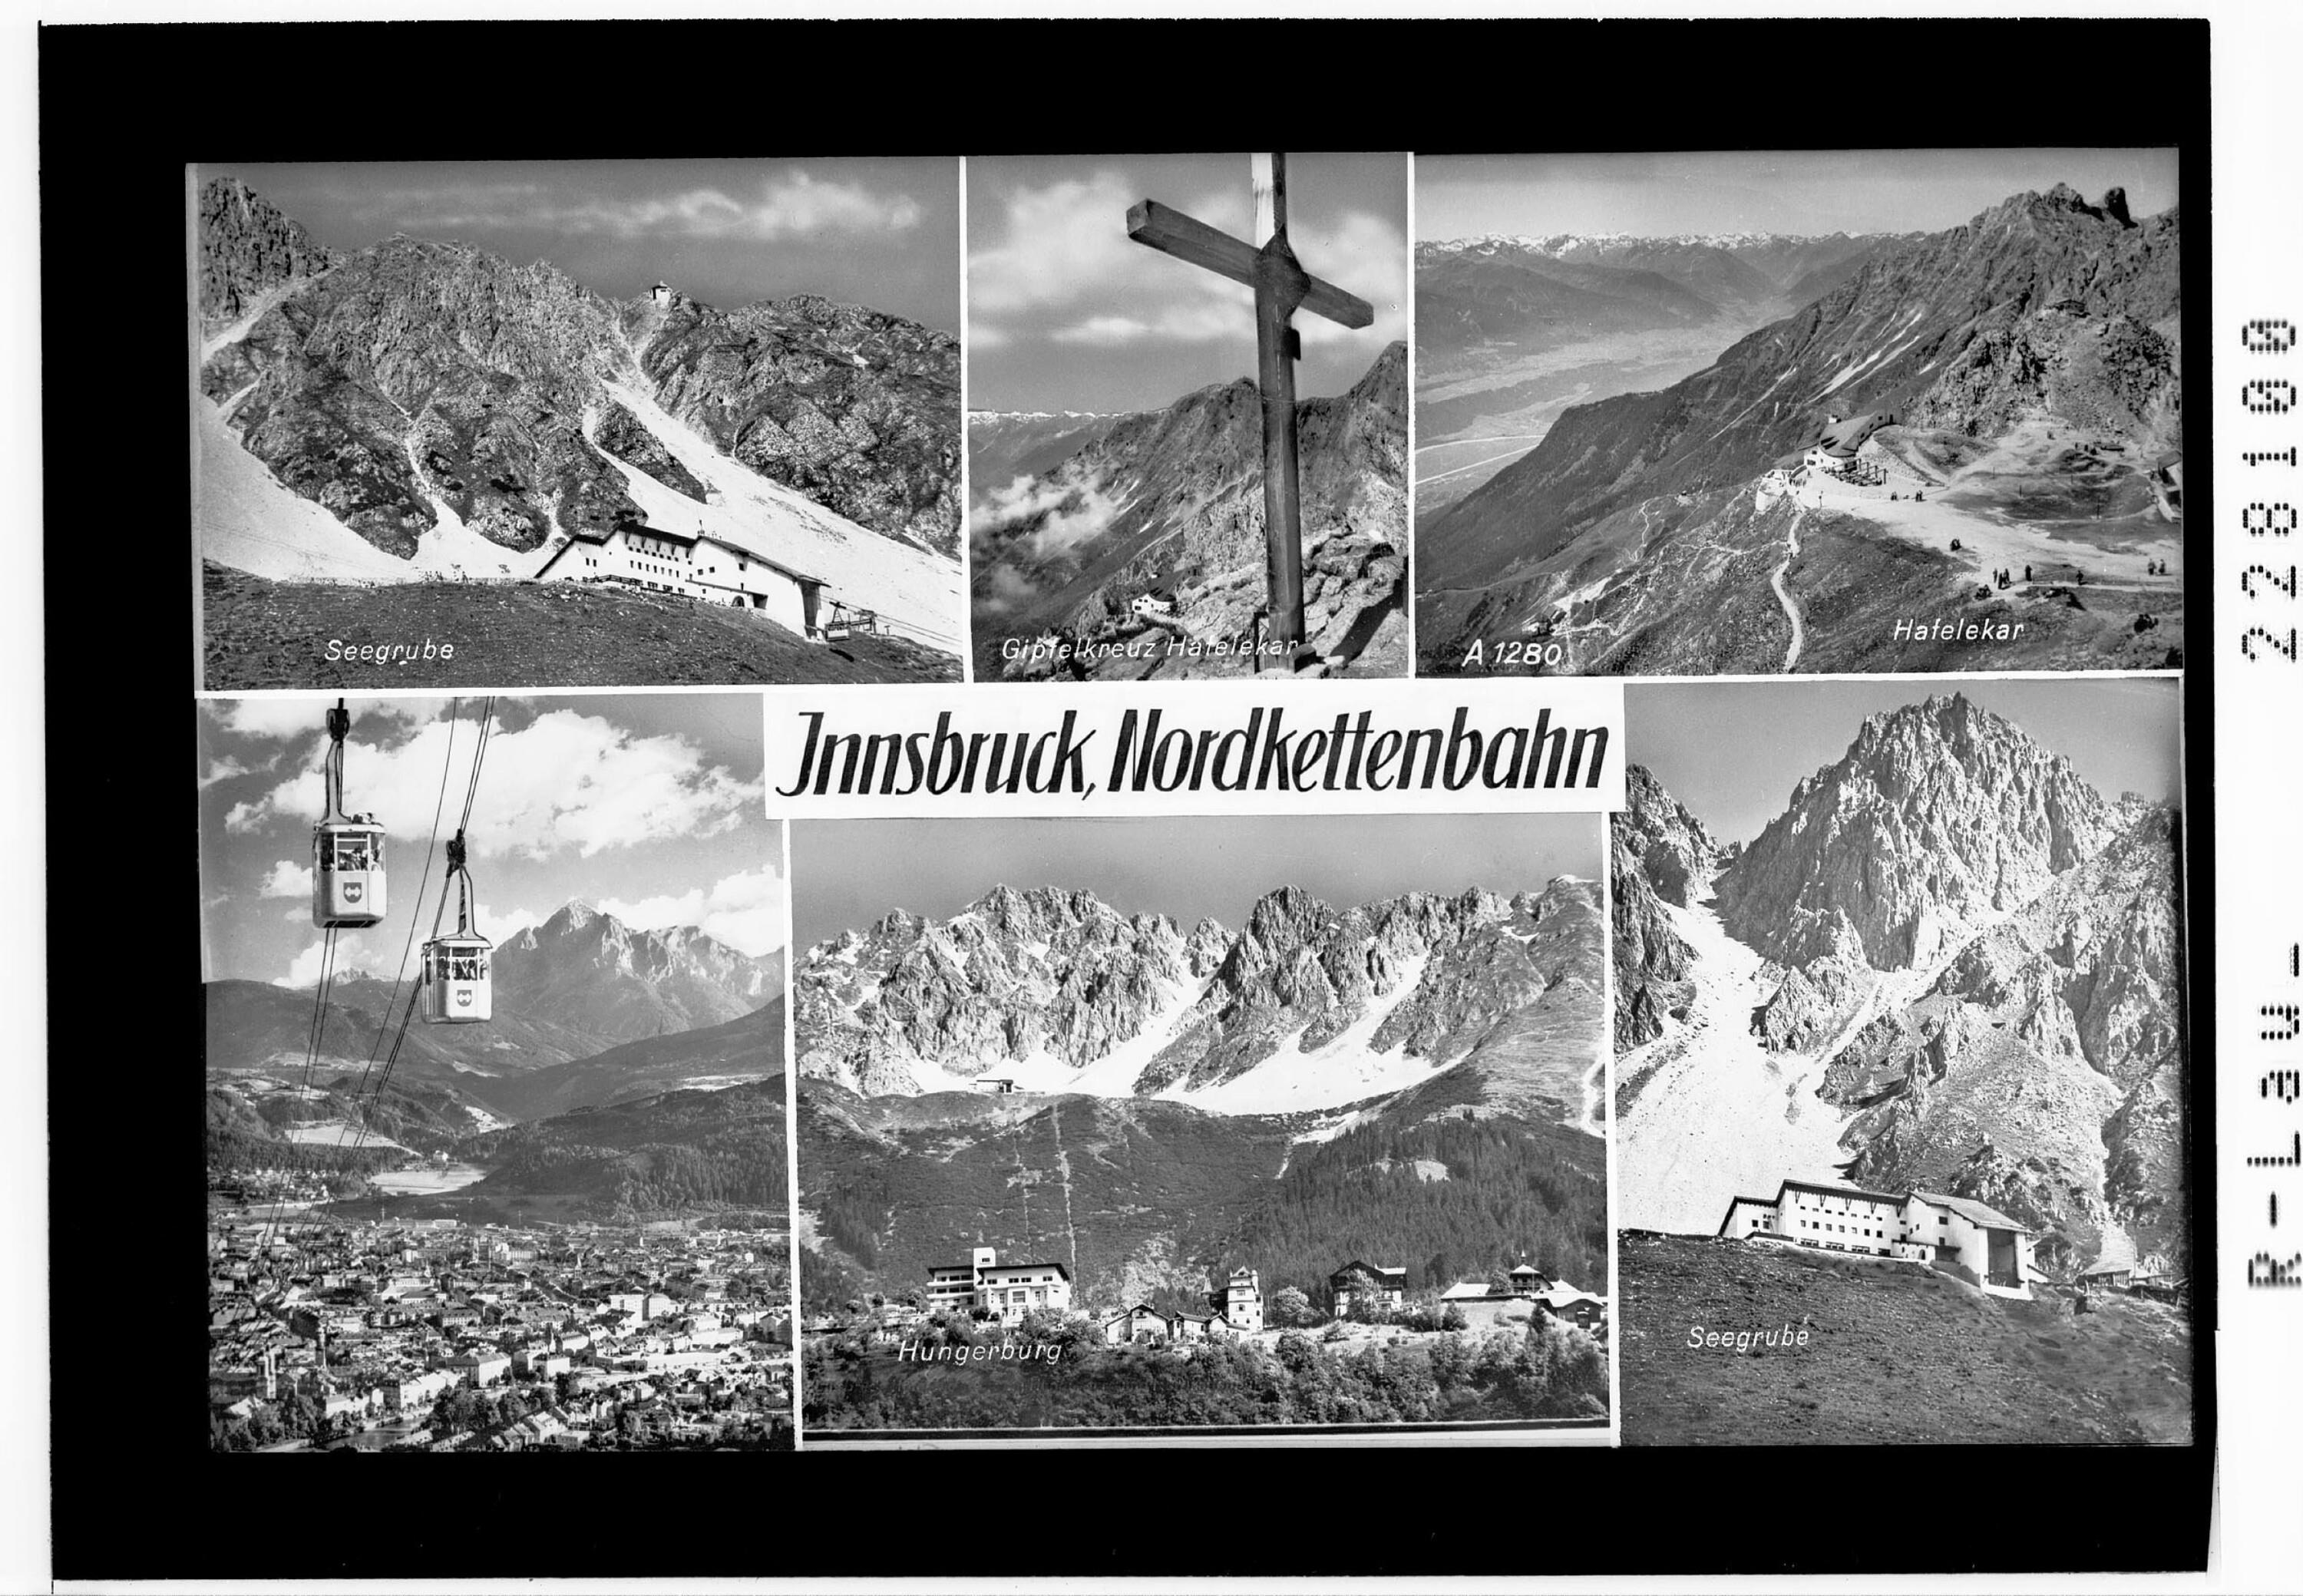 Innsbruck / Nordkettenbahn></div>


    <hr>
    <div class=